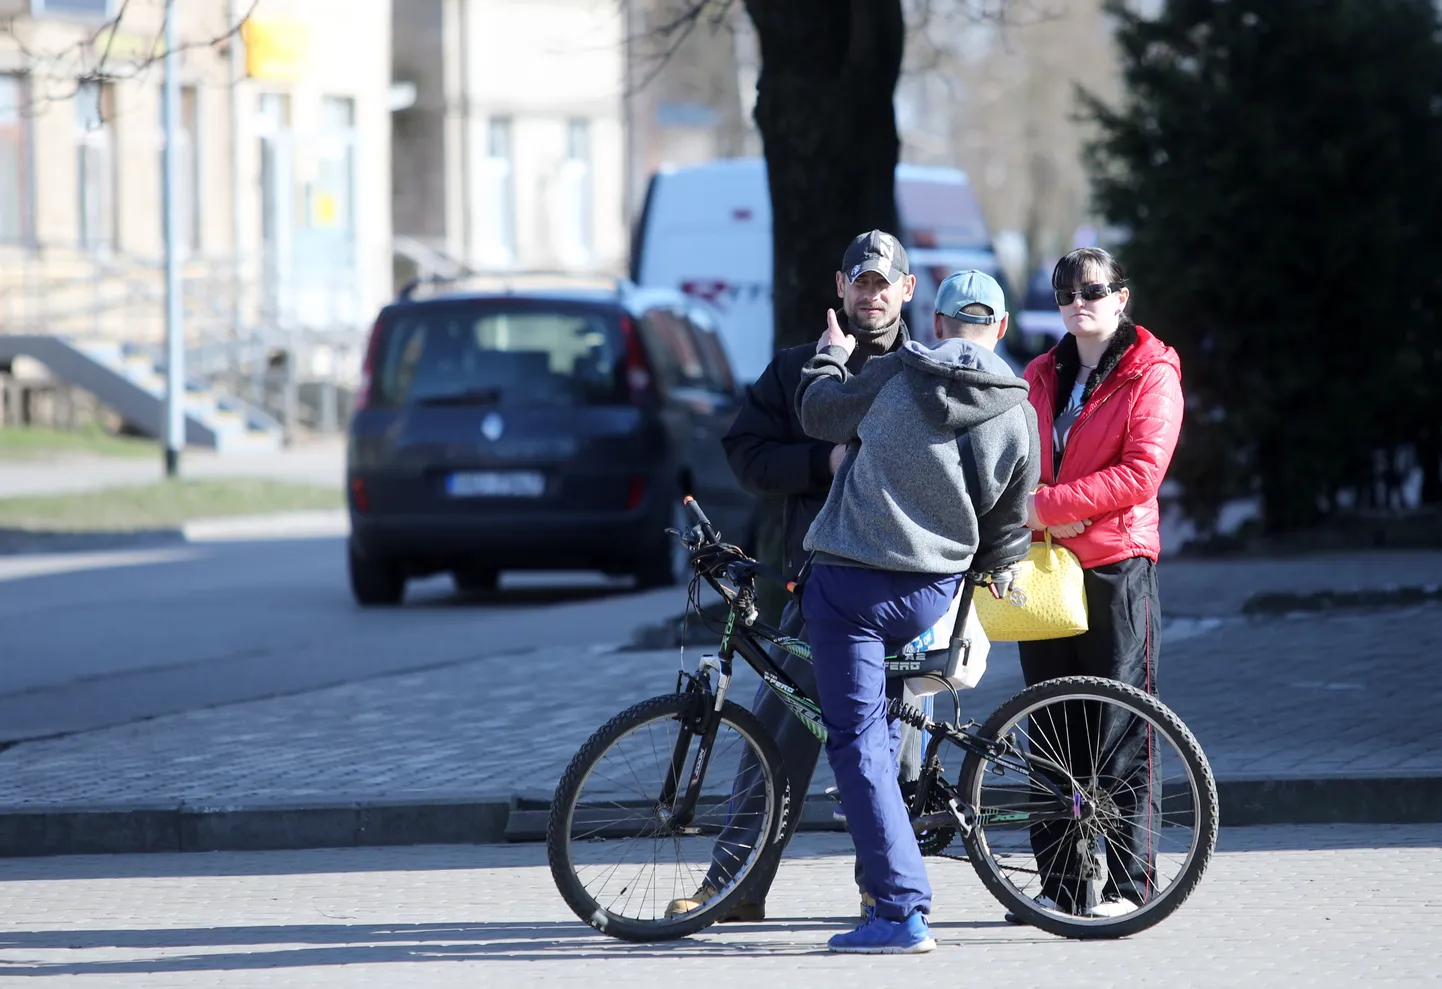 Cilvēki uz ielas Bolderājā, kad Latvijā saistībā ar Covid-19 vīrusa izplatību izsludināta ārkārtējā situācija, kas paredz ievērot virkni ierobežojumus - turpmāk ievērot divu metru attālumu starp cilvēkiem un vienlaicīgi pulcēties publiskās iekštelpās un ārtelpās varēs ne vairāk kā divas personas, cilvēki, kas dzīvo vienā mājsaimniecībā, vecāki un to nepilngadīgie bērni.